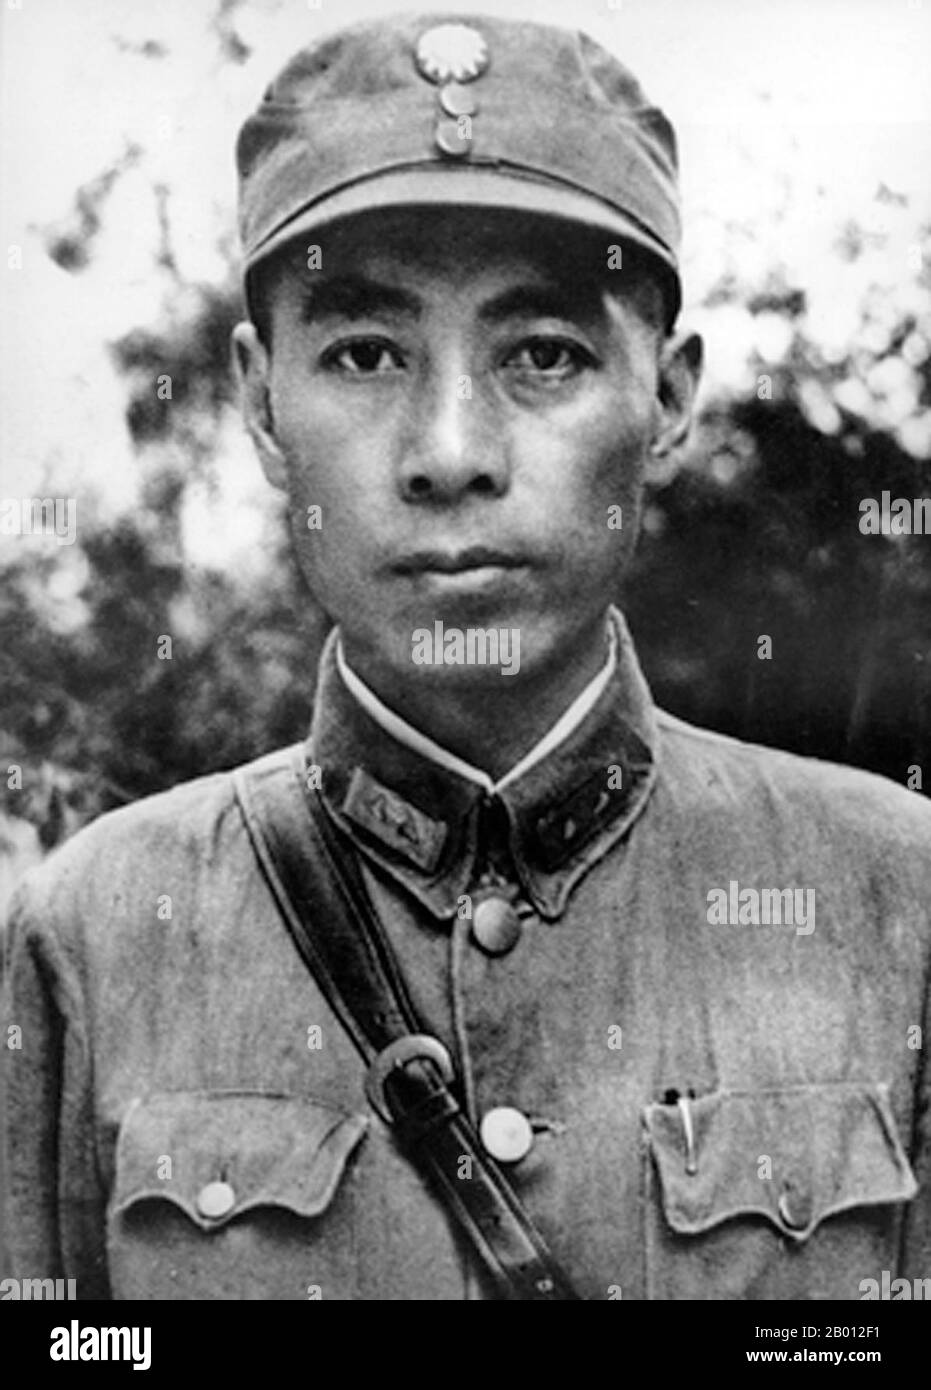 Cina: Zhou Enlai (Chou en-lai, 5 marzo 1898 – 8 gennaio 1976) all'Accademia militare di Whampoa, c. 1926. Zhou Enlai è stato il primo Premier della Repubblica popolare Cinese, servendo dall'ottobre 1949 fino alla sua morte nel gennaio 1976. Zhou è stato determinante per l'ascesa al potere del Partito comunista, e successivamente per lo sviluppo dell'economia cinese e la ristrutturazione della società cinese. Foto Stock